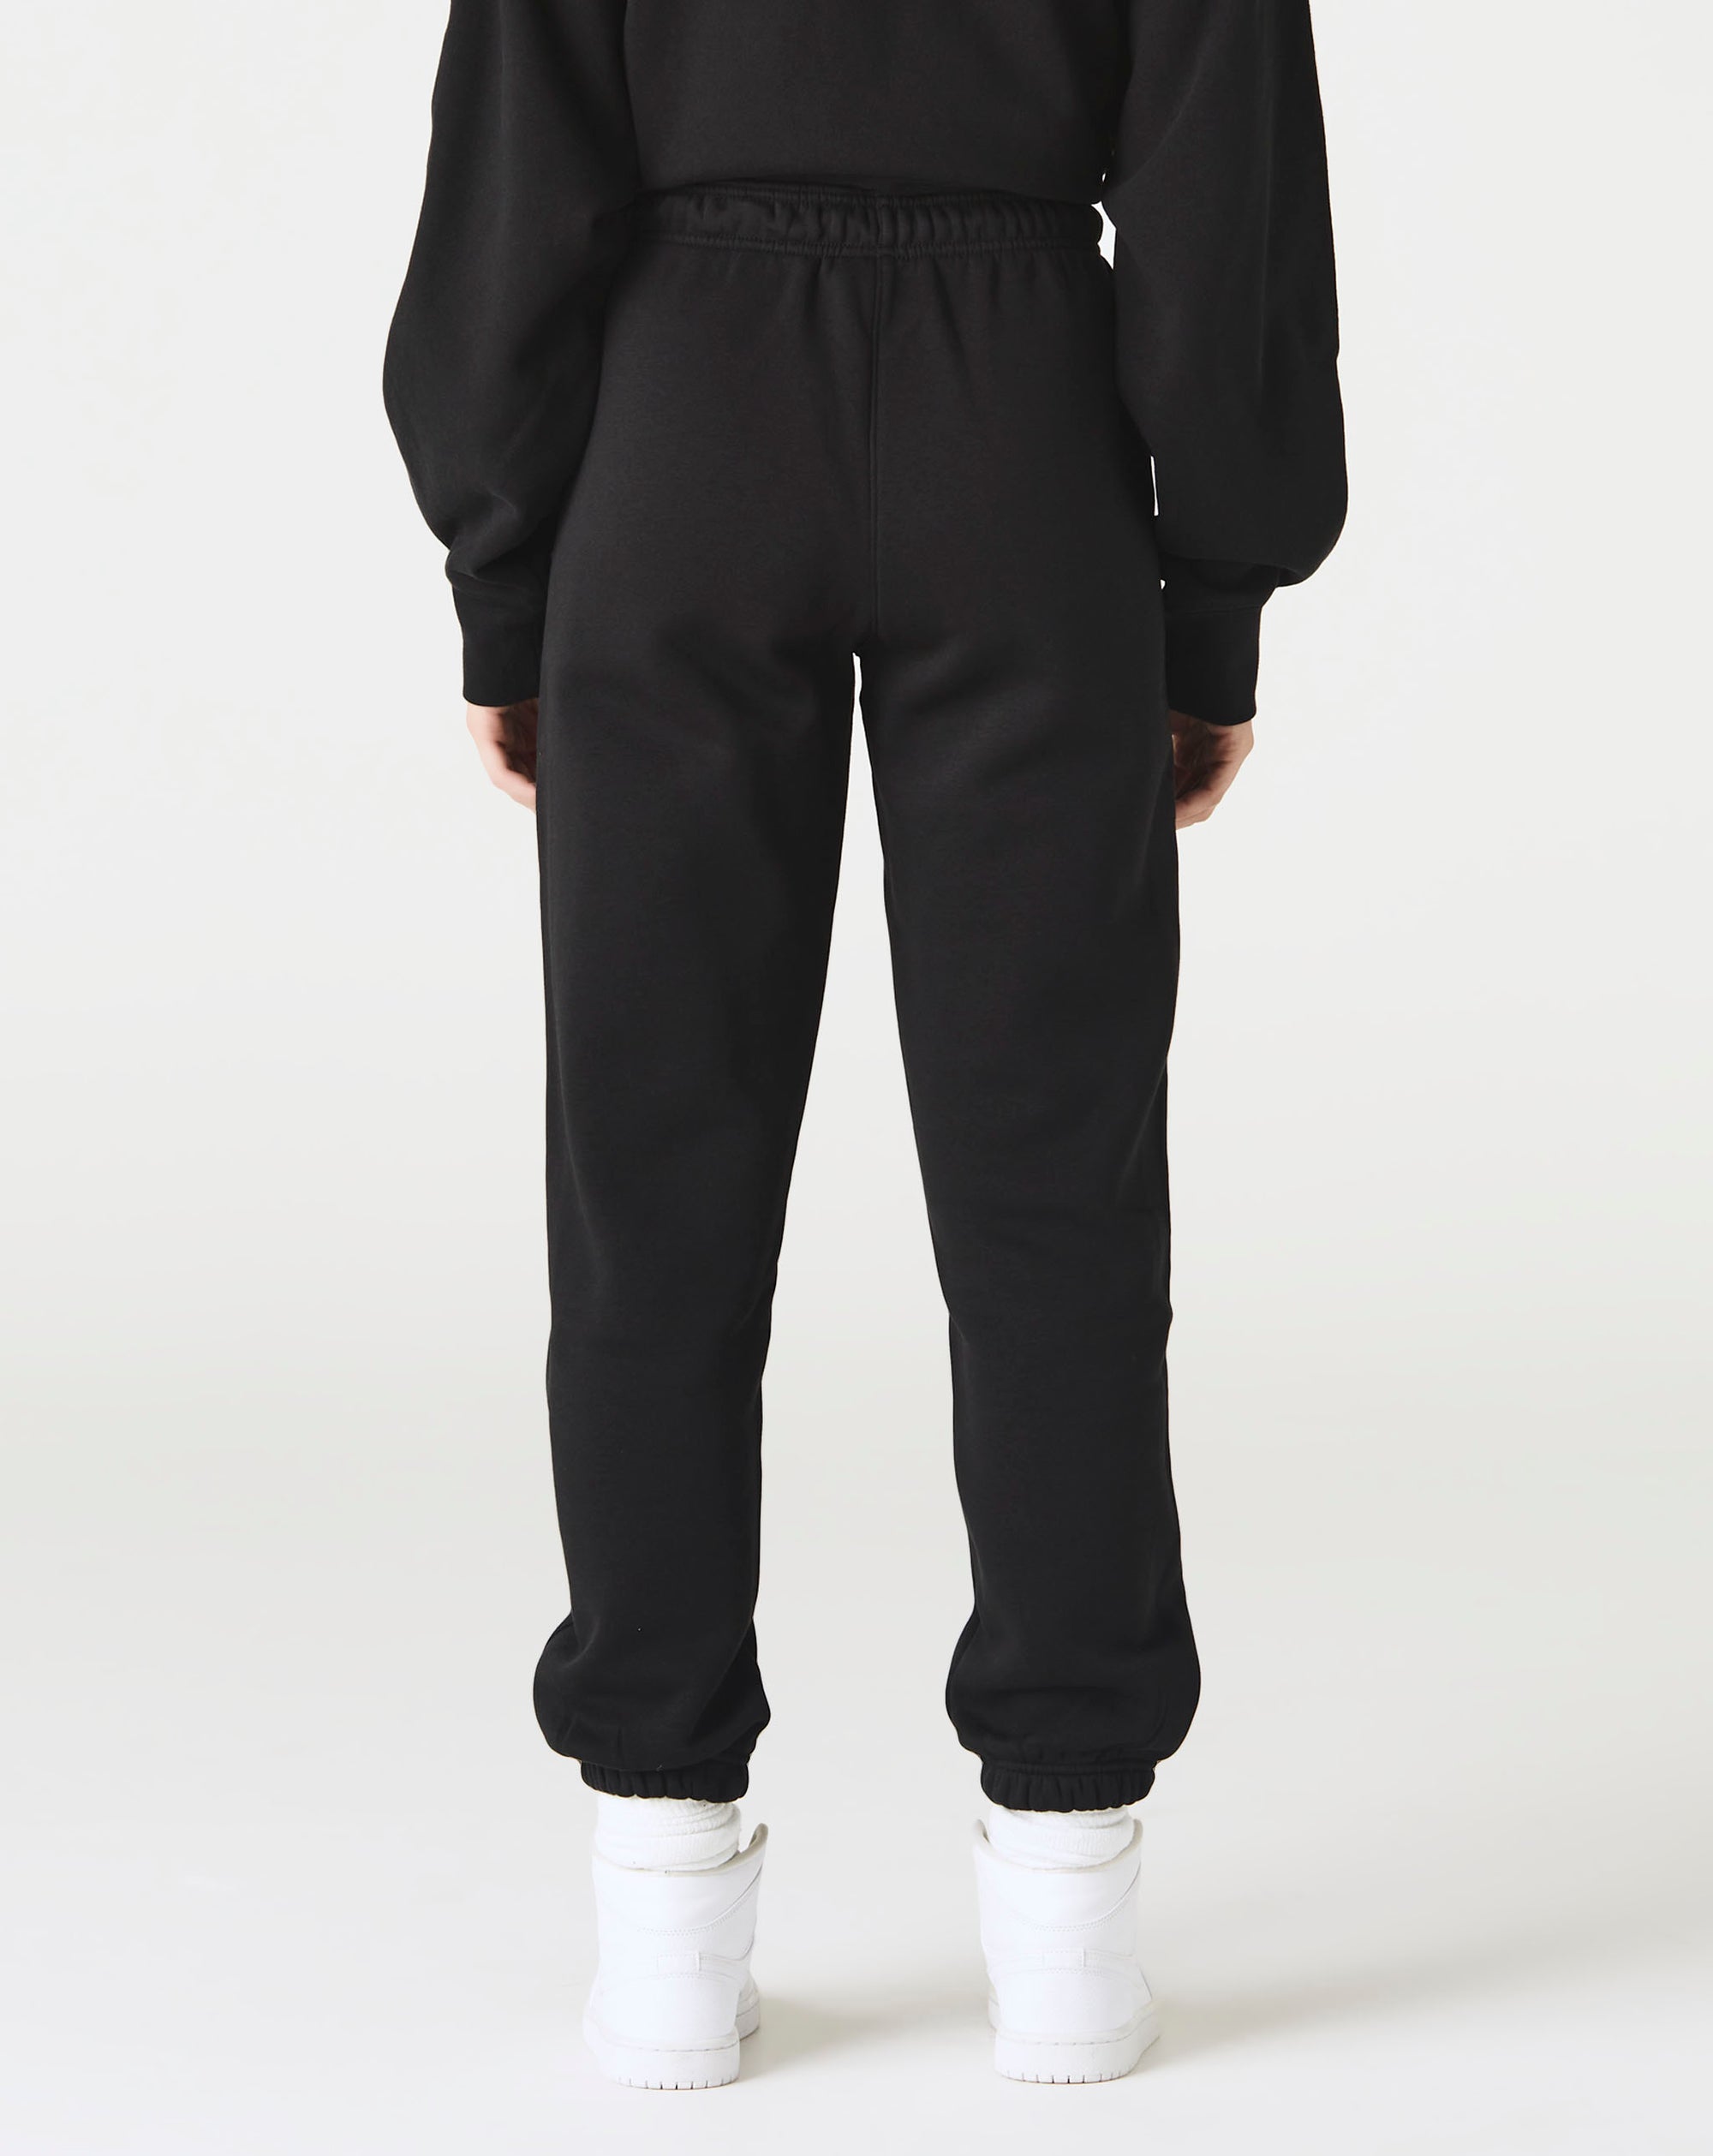 Air Jordan Women's Jordan Brooklyn Fleece Pants - Rule of Next Apparel